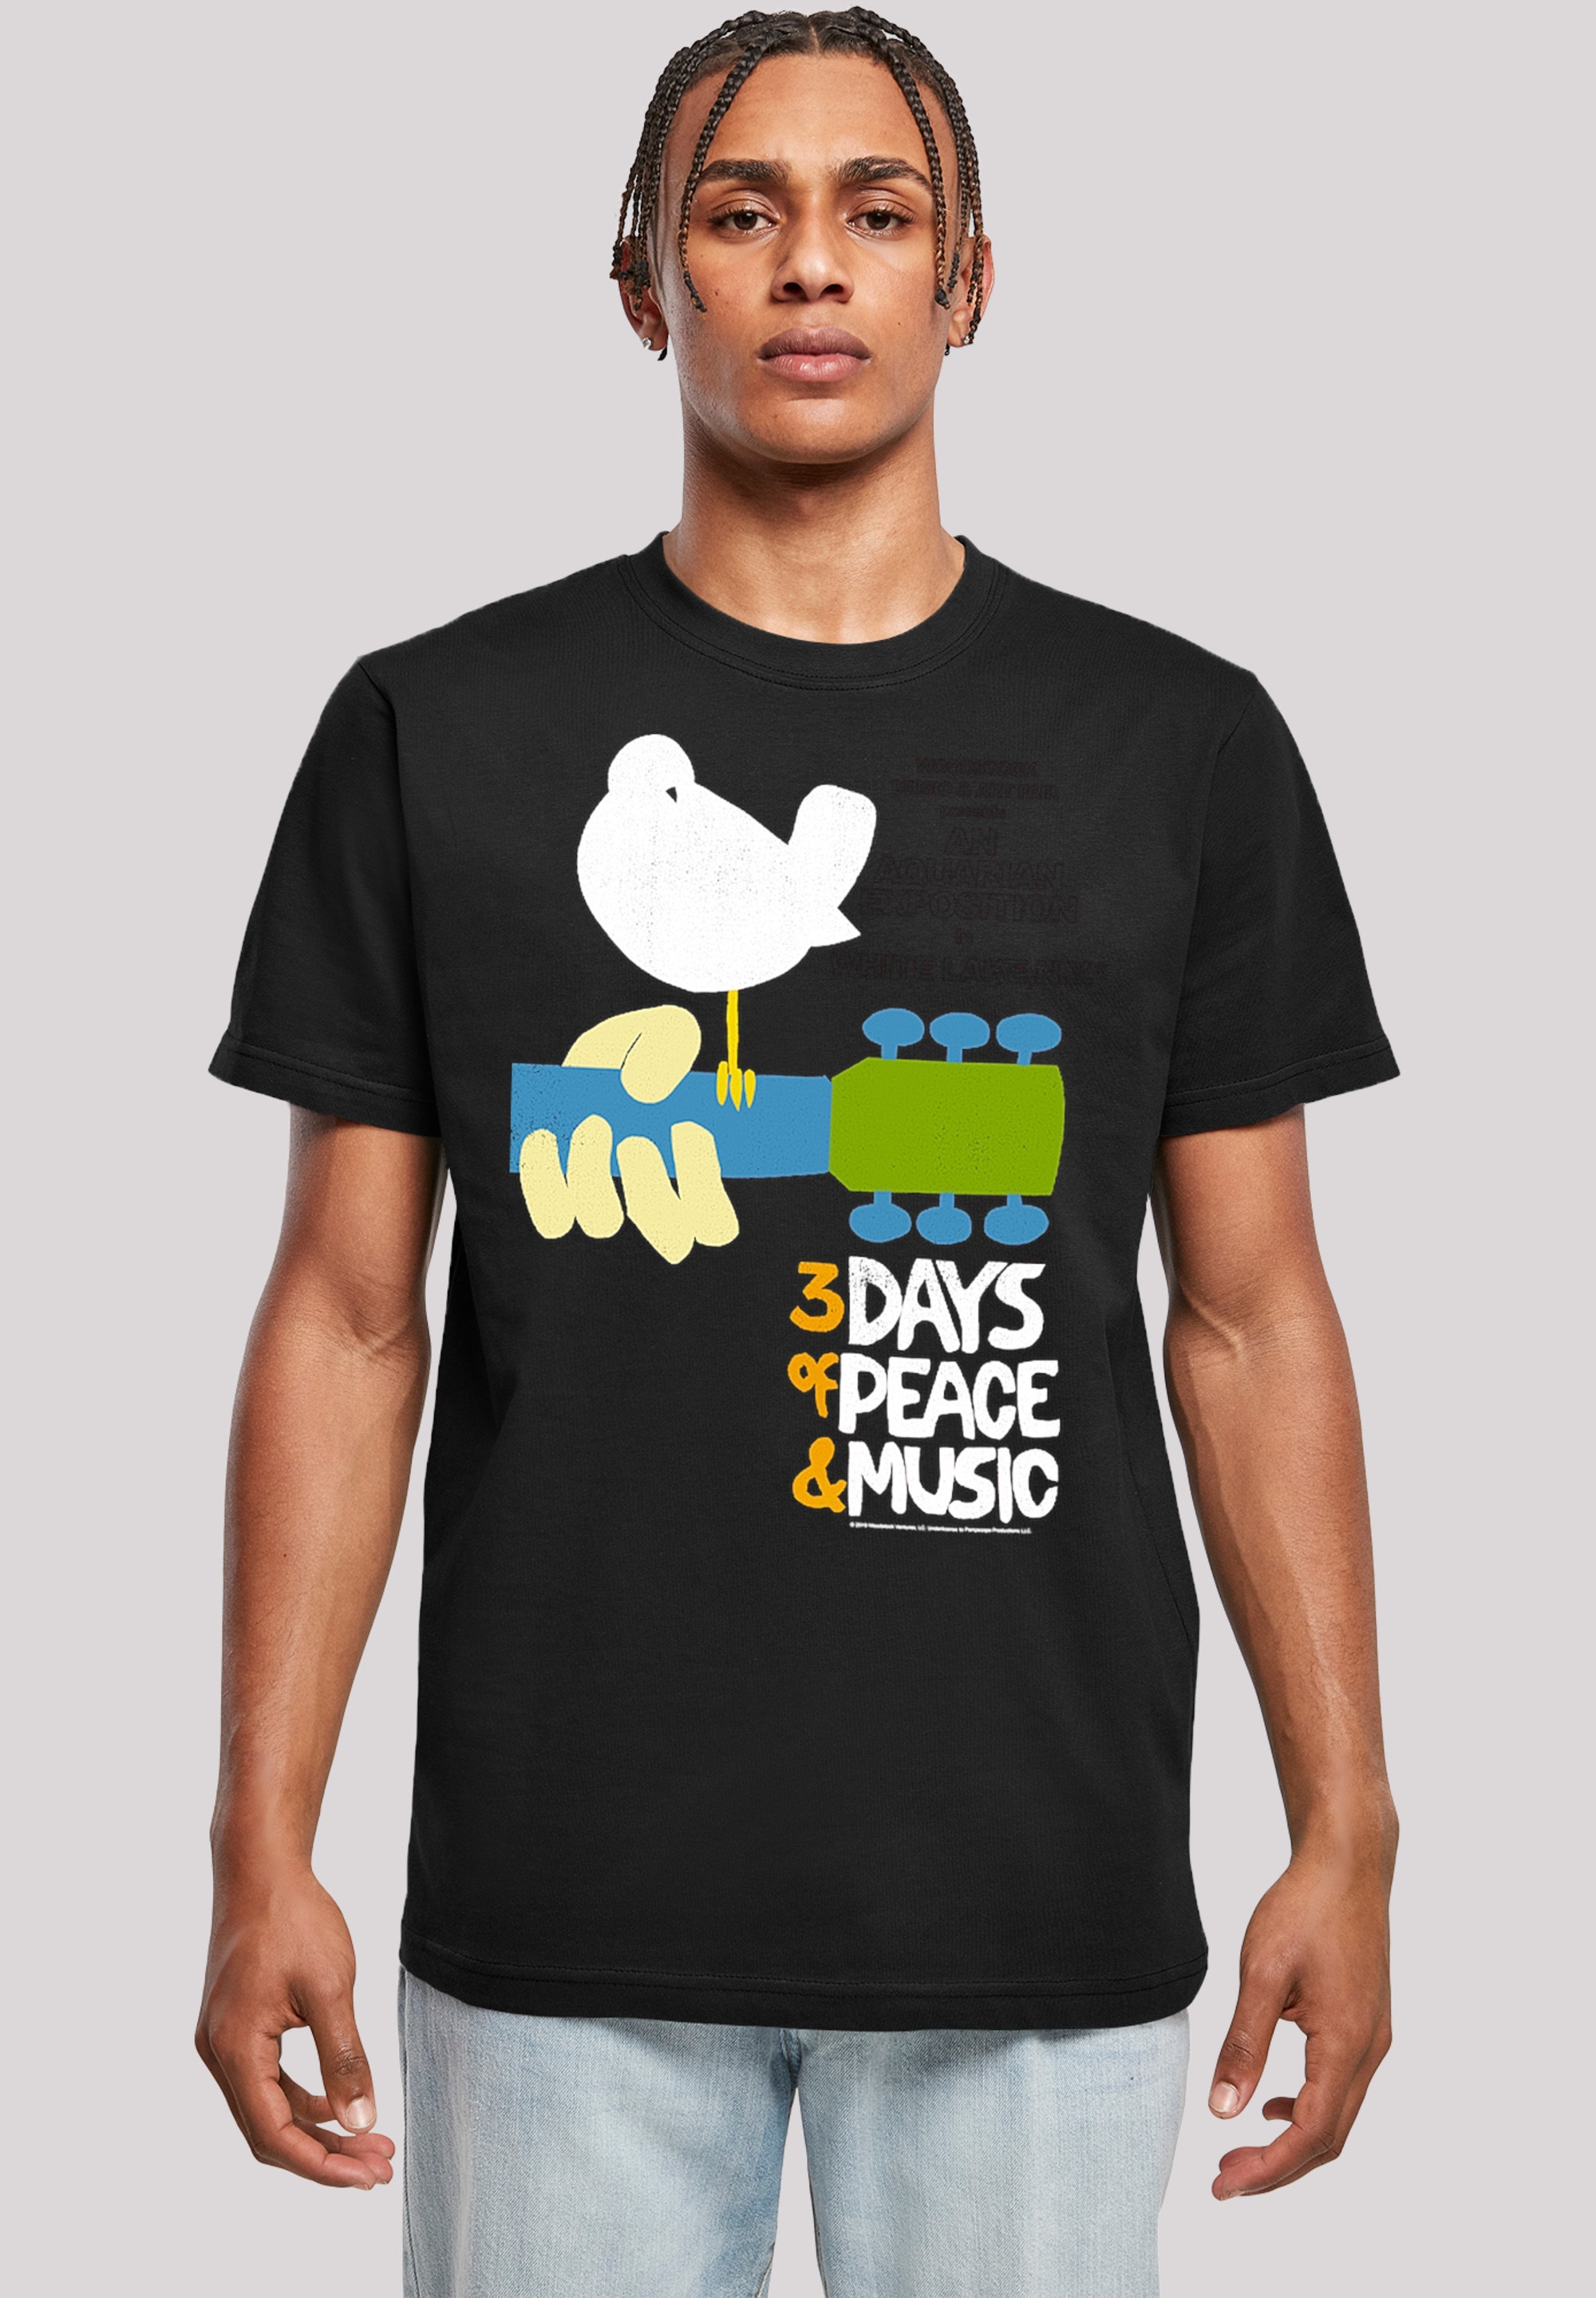 F4NT4STIC T-Shirt »Woodstock Festival Poster«, Herren,Premium Merch,Regular-Fit,Basic,Bandshirt